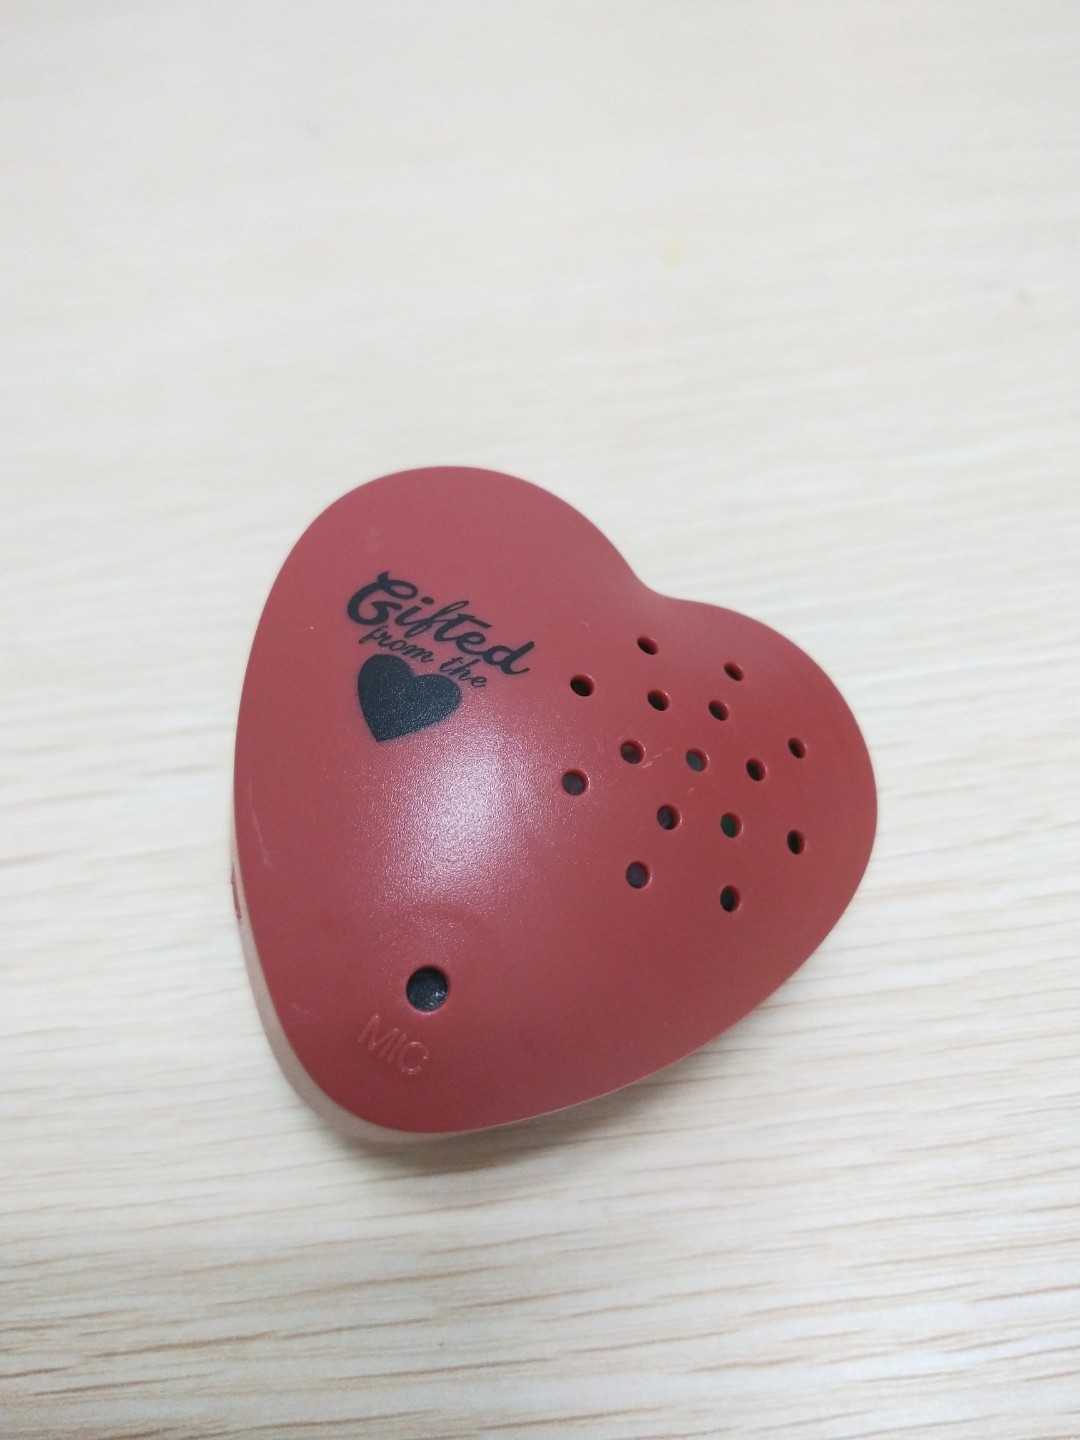 Botón de caja de voz del módulo de sonido de la grabadora de voz en forma de corazón